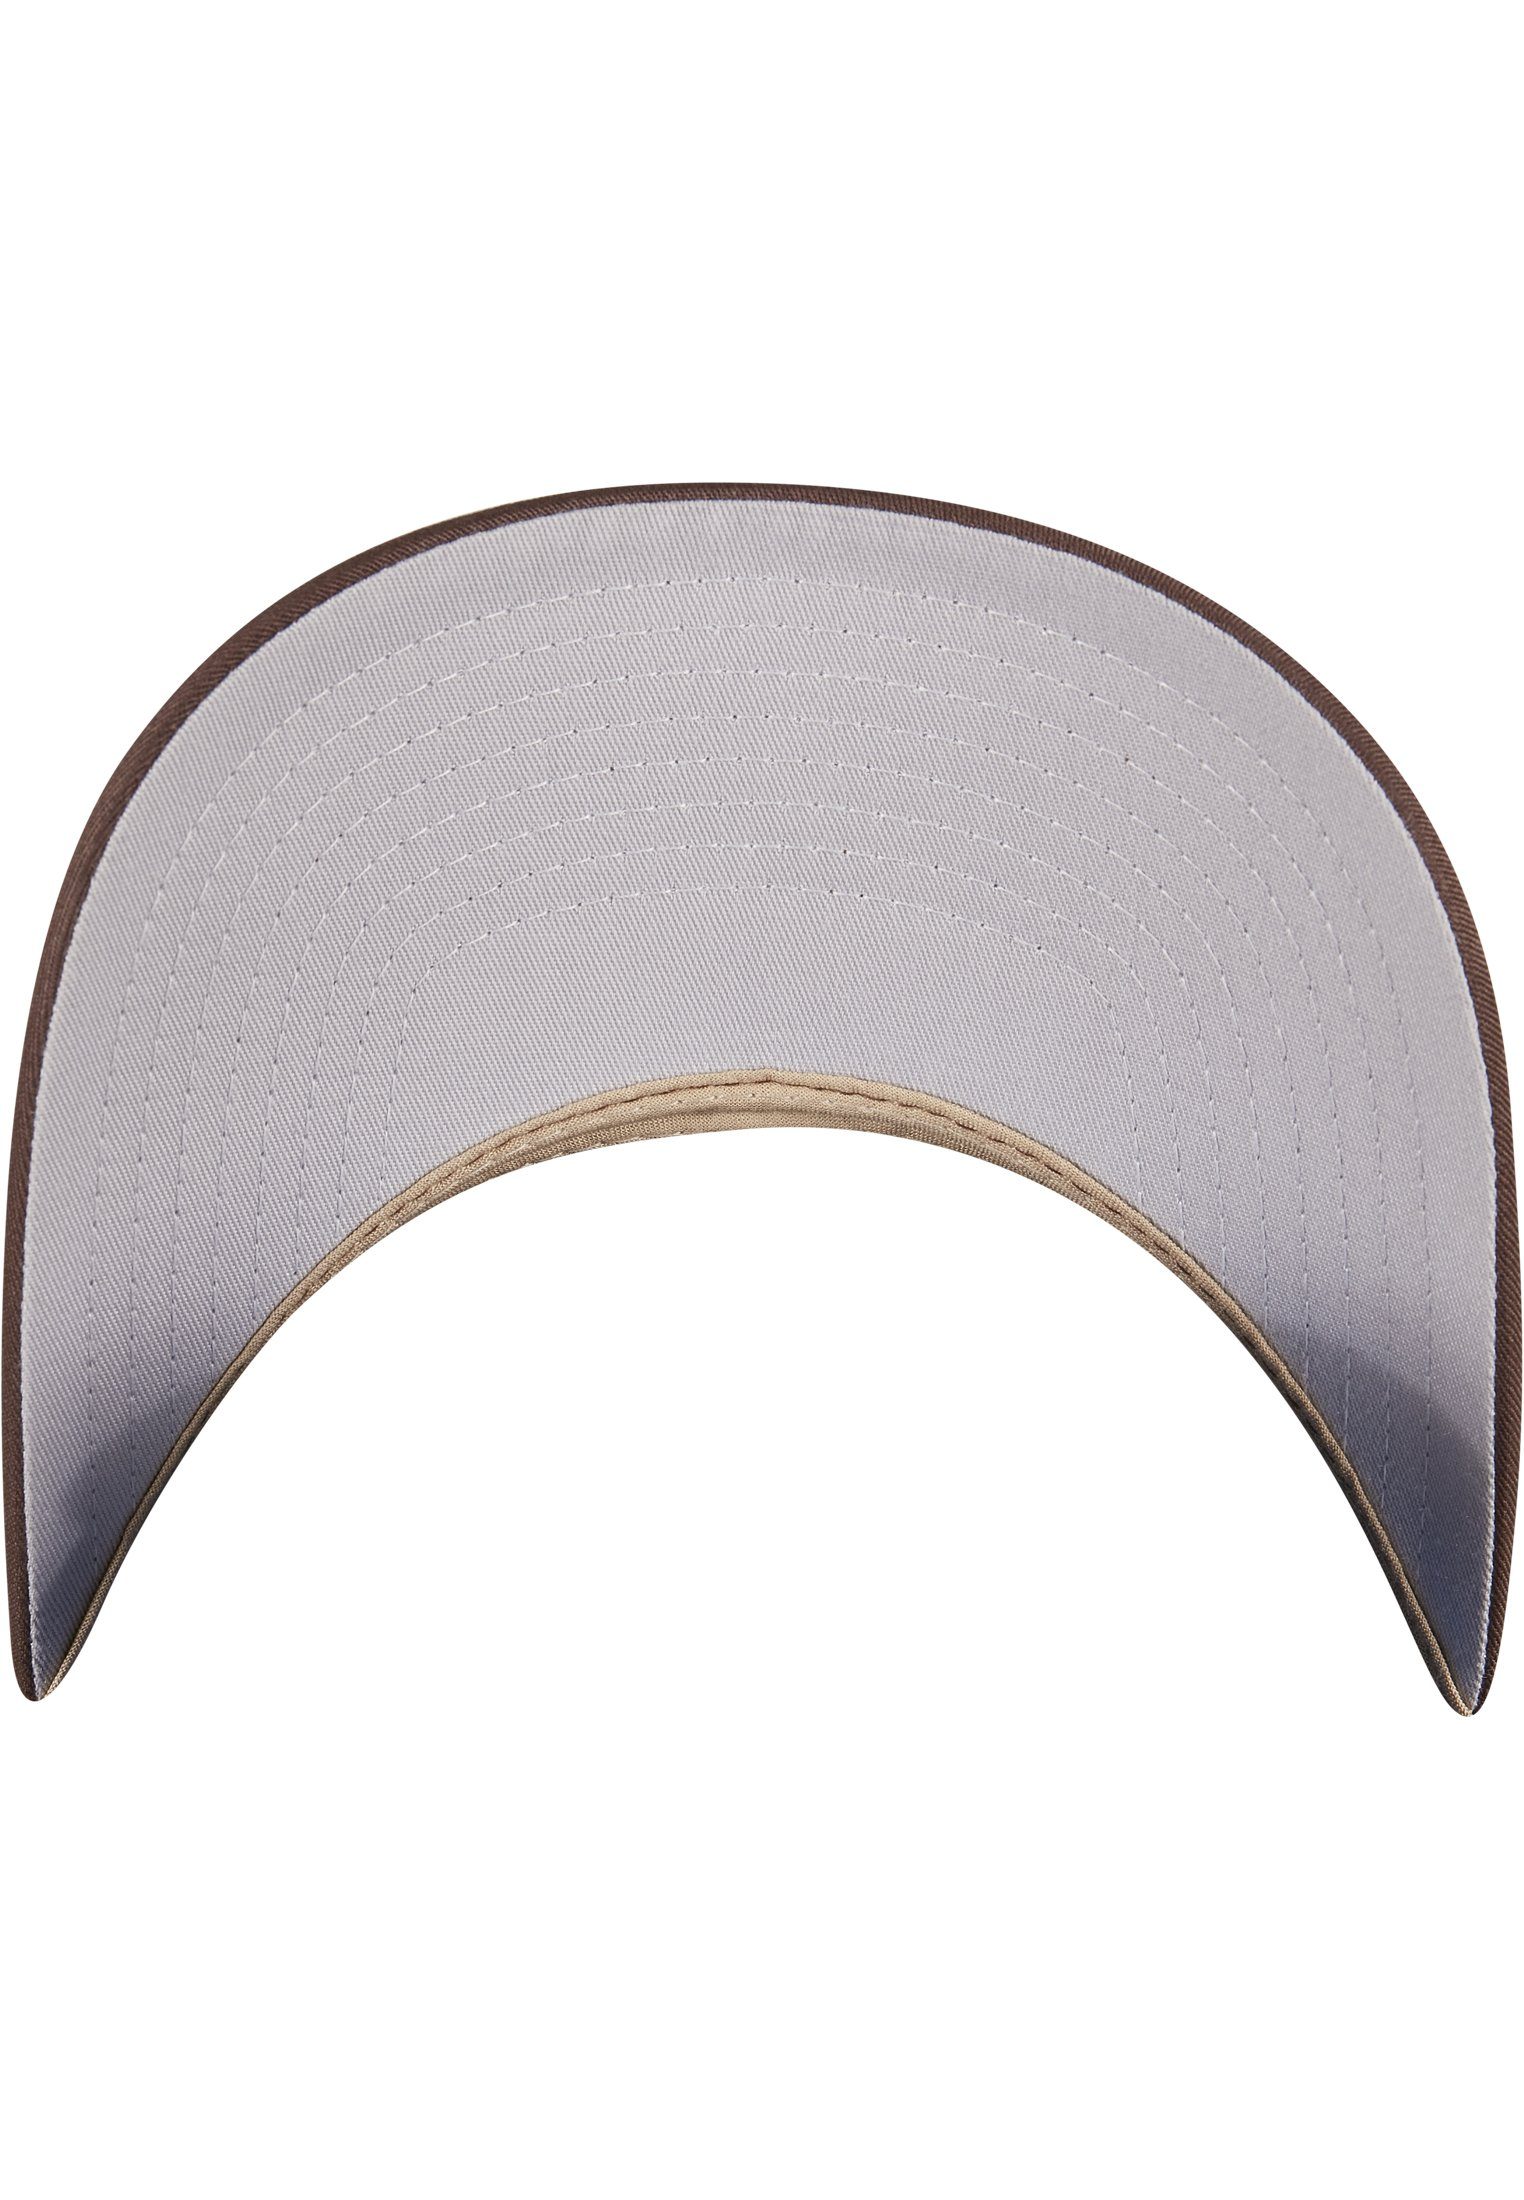 Omnimesh Flex brown/khaki 360° Cap Cap Accessoires Flexfit 2-Tone